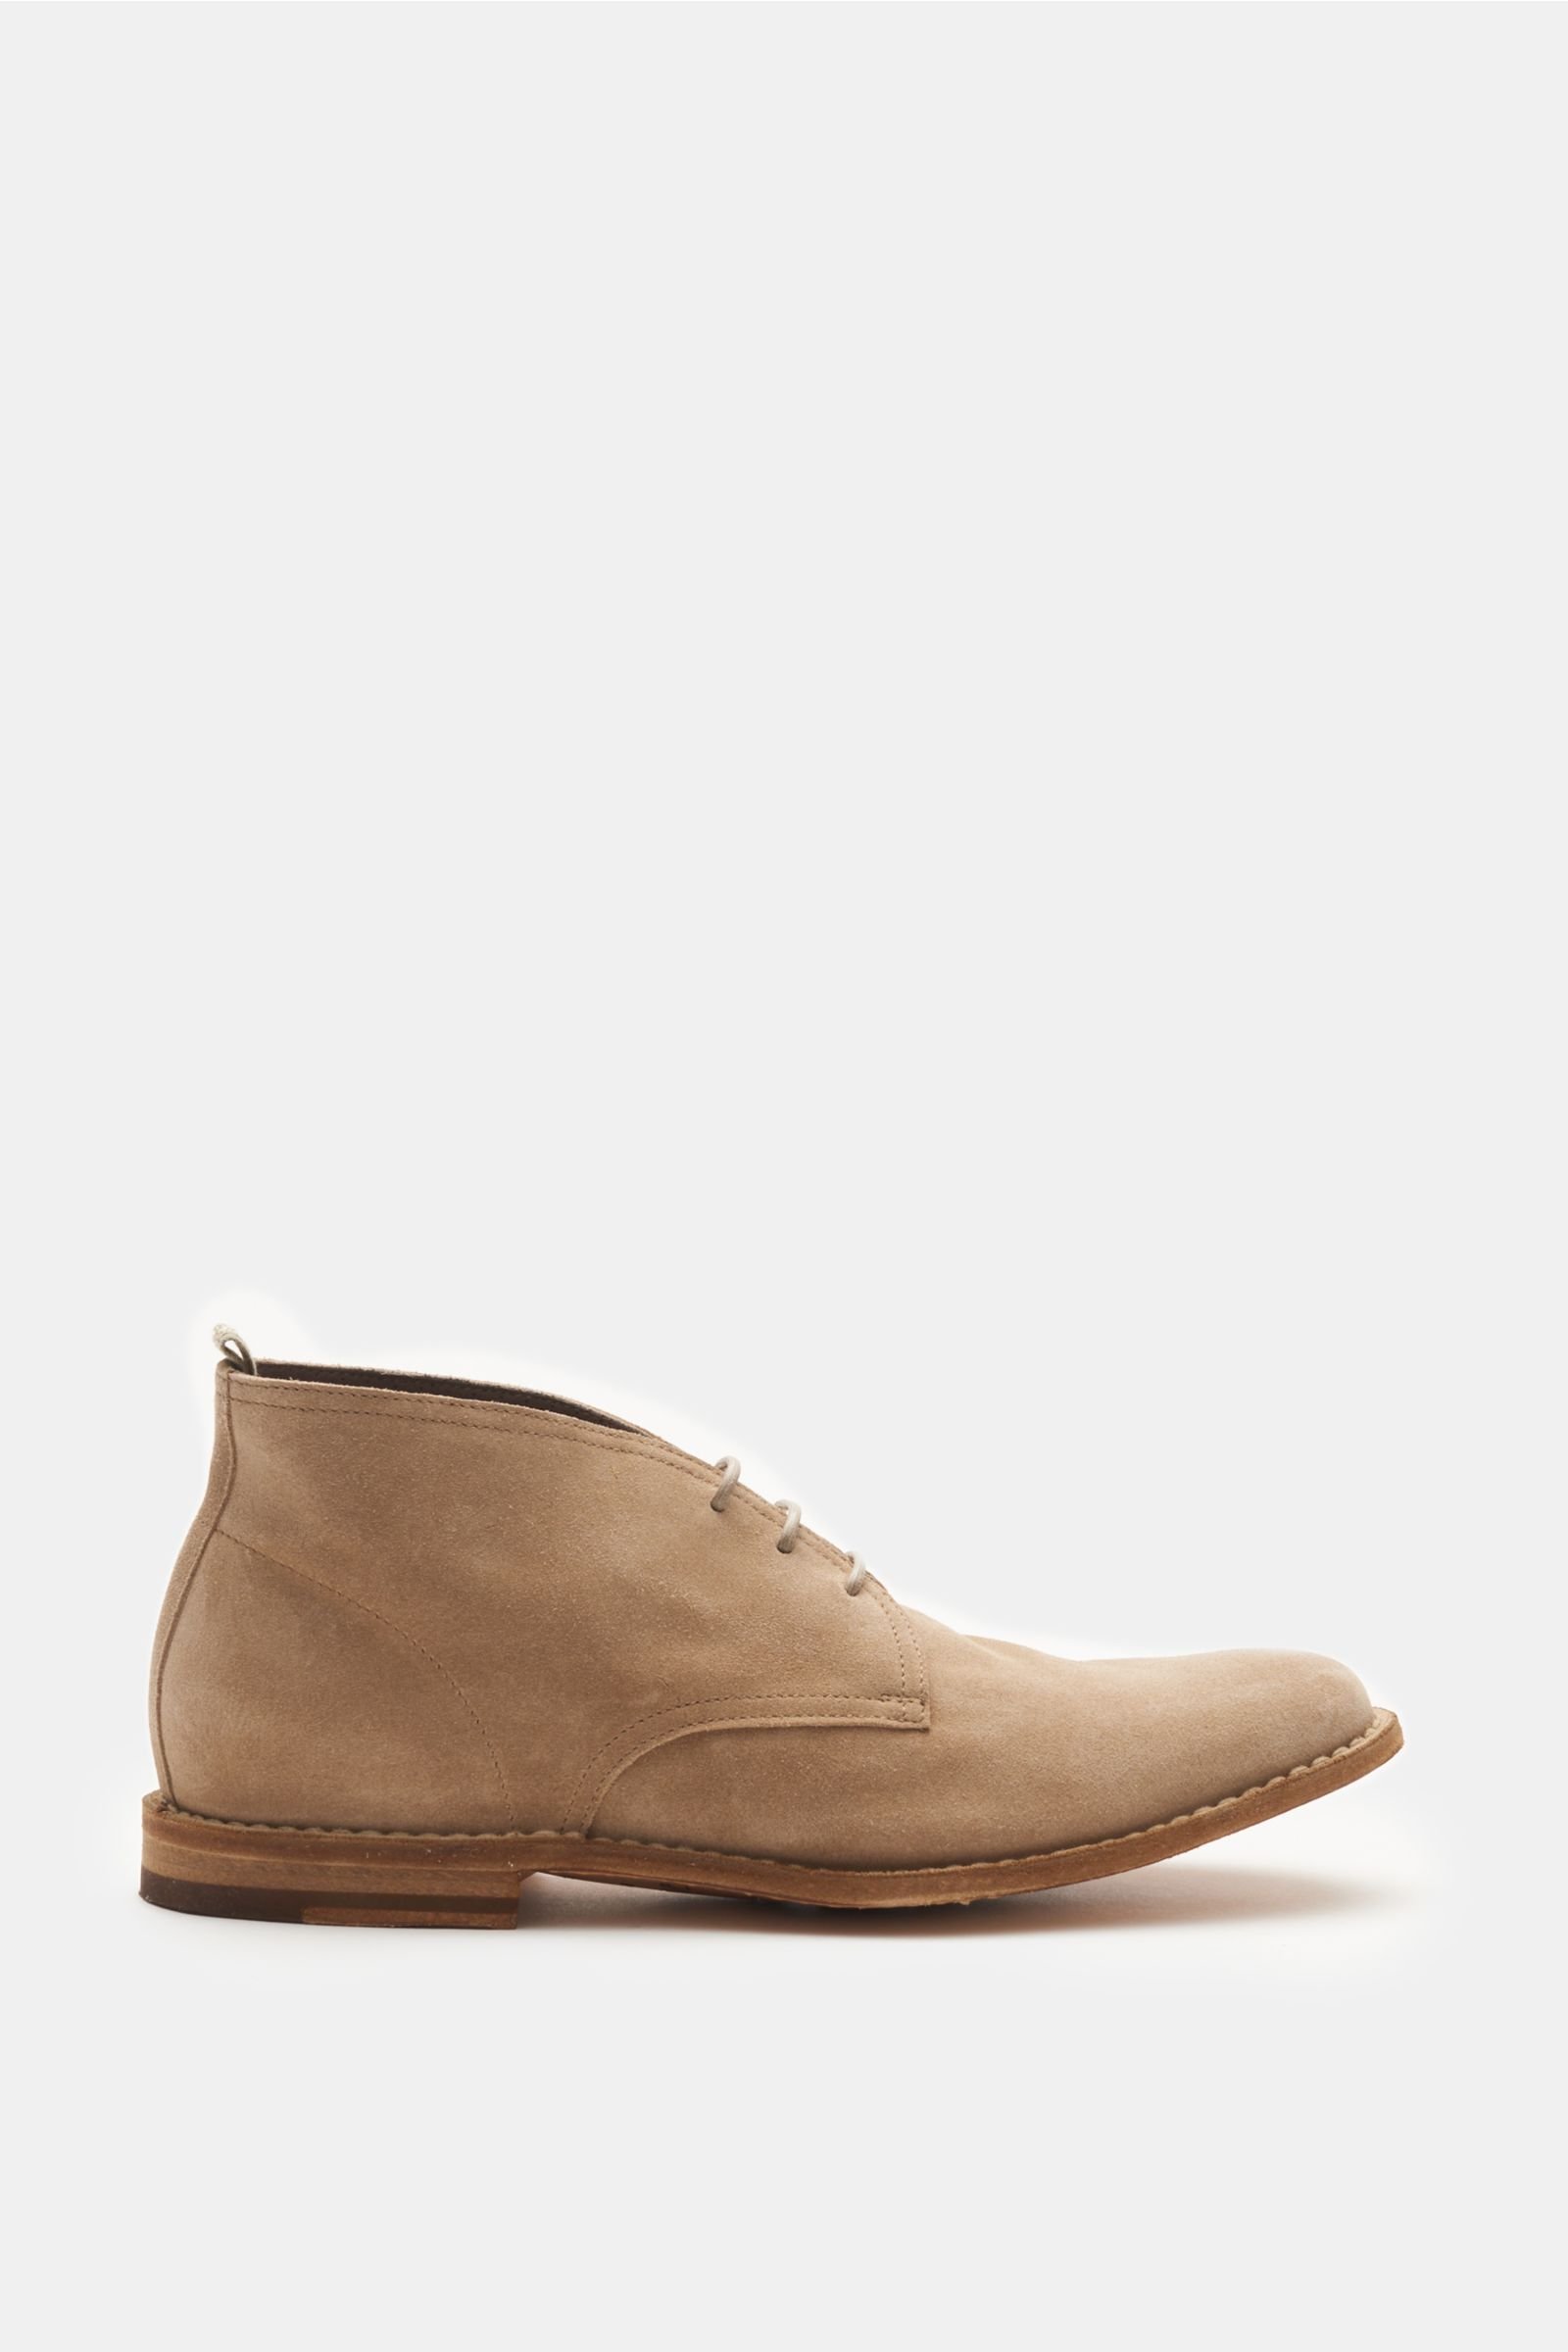 Desert boots 'Steple 14' light brown